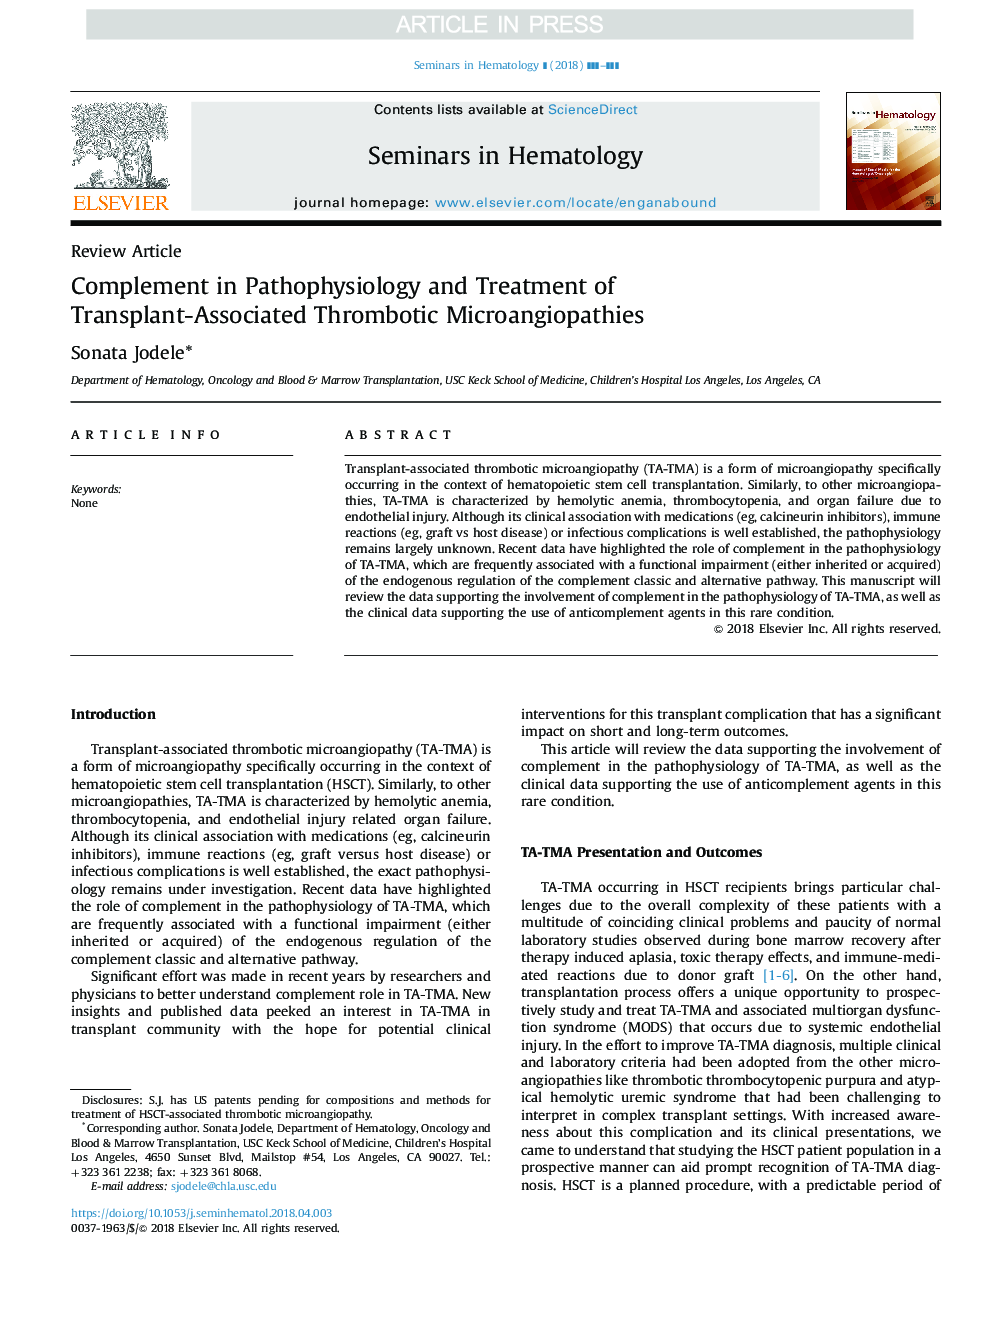 مکمل در پاتوفیزیولوژی و درمان میکروآنژیوپاتی ترومبوز وابسته به پیوند 